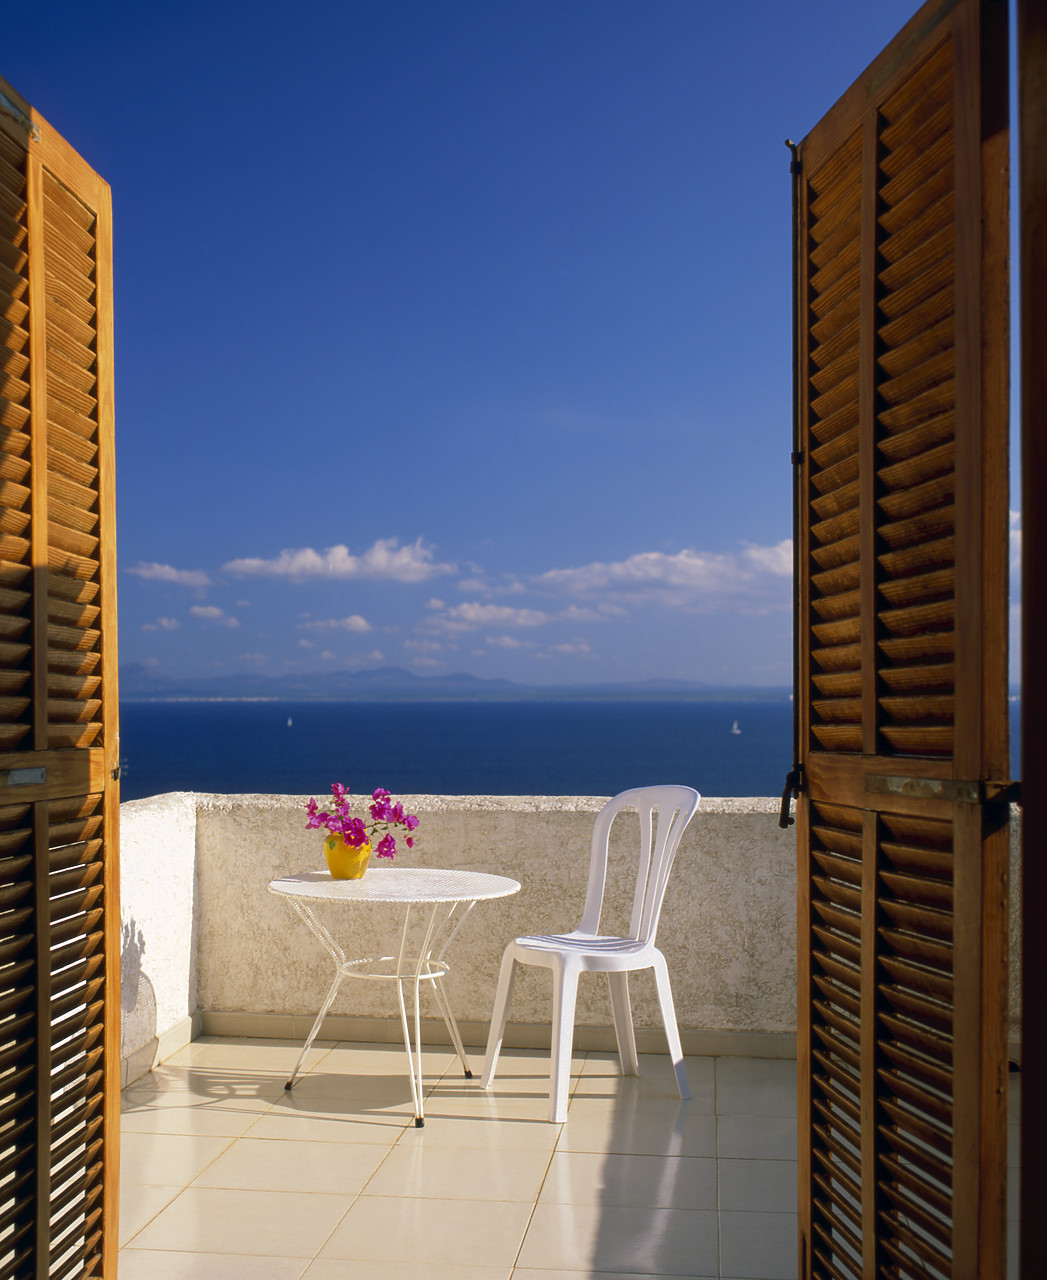 #050254-1 - Balcony Overlooking Alcudia Bay, Mallorca, Spain